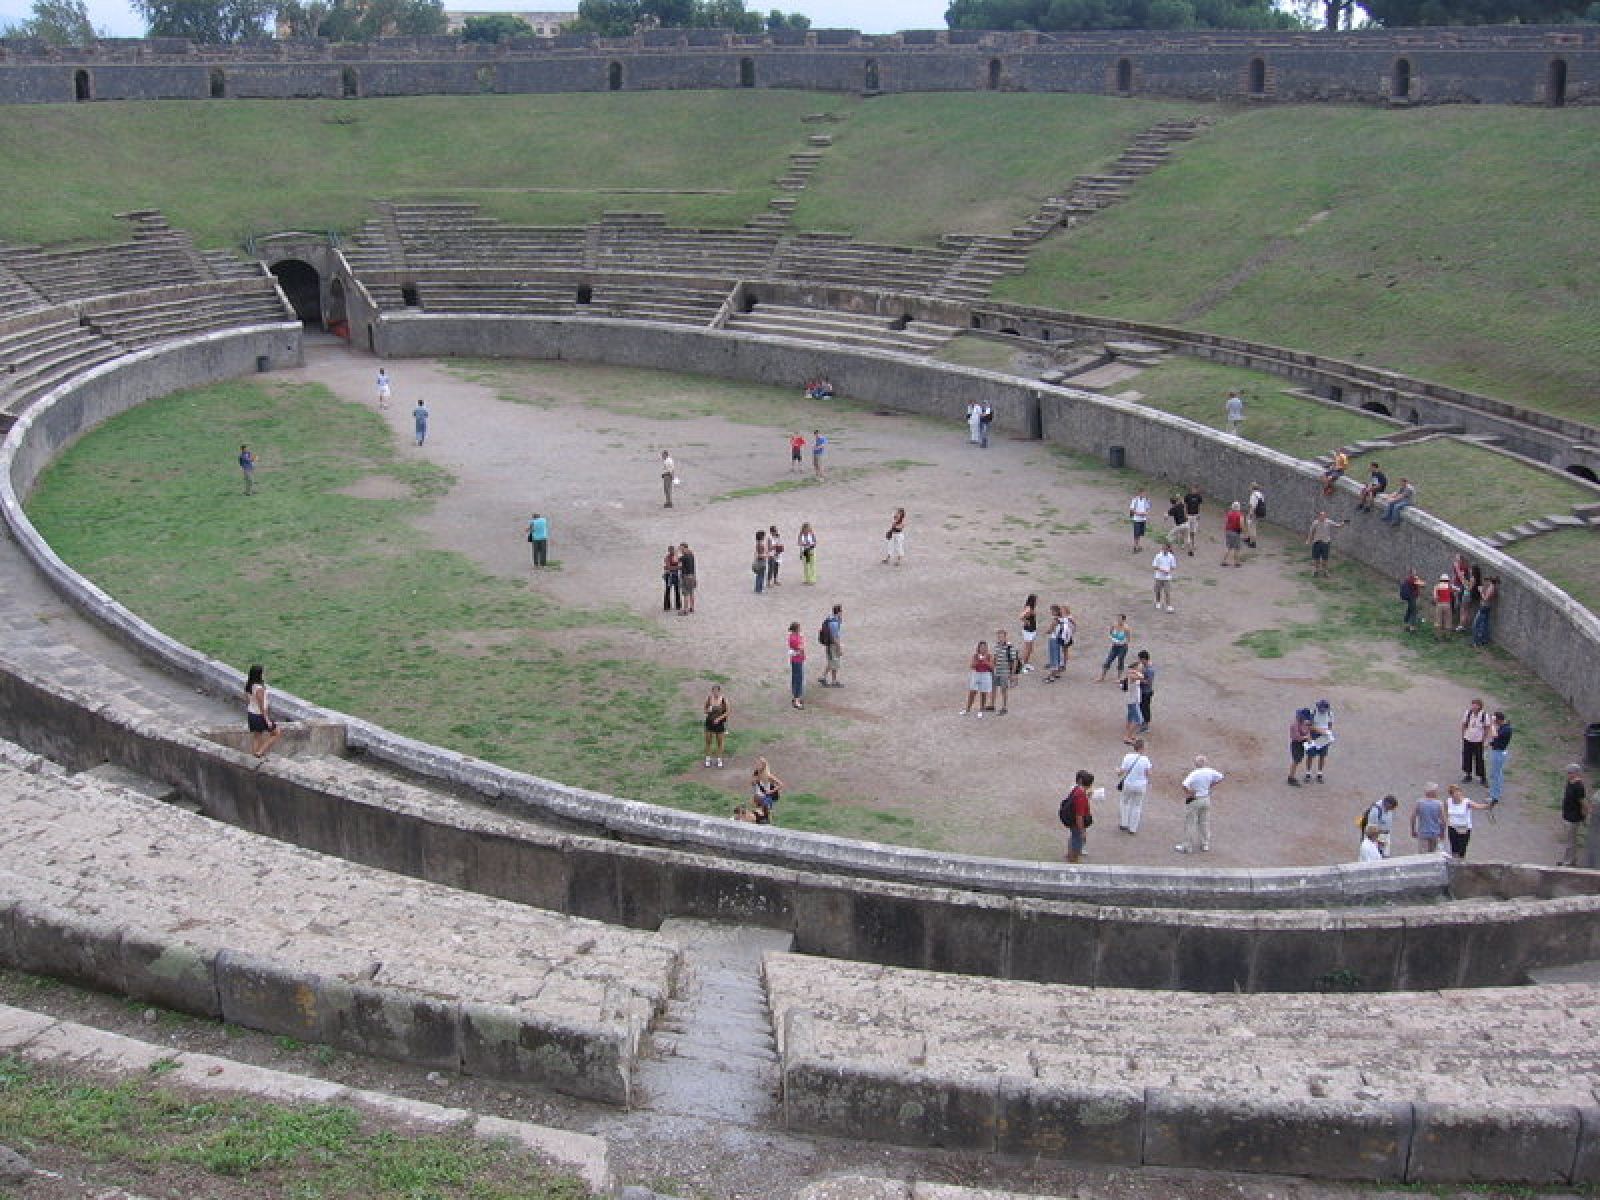 Una imagen del anfiteatro de Pompeya, recorrido por los turistas